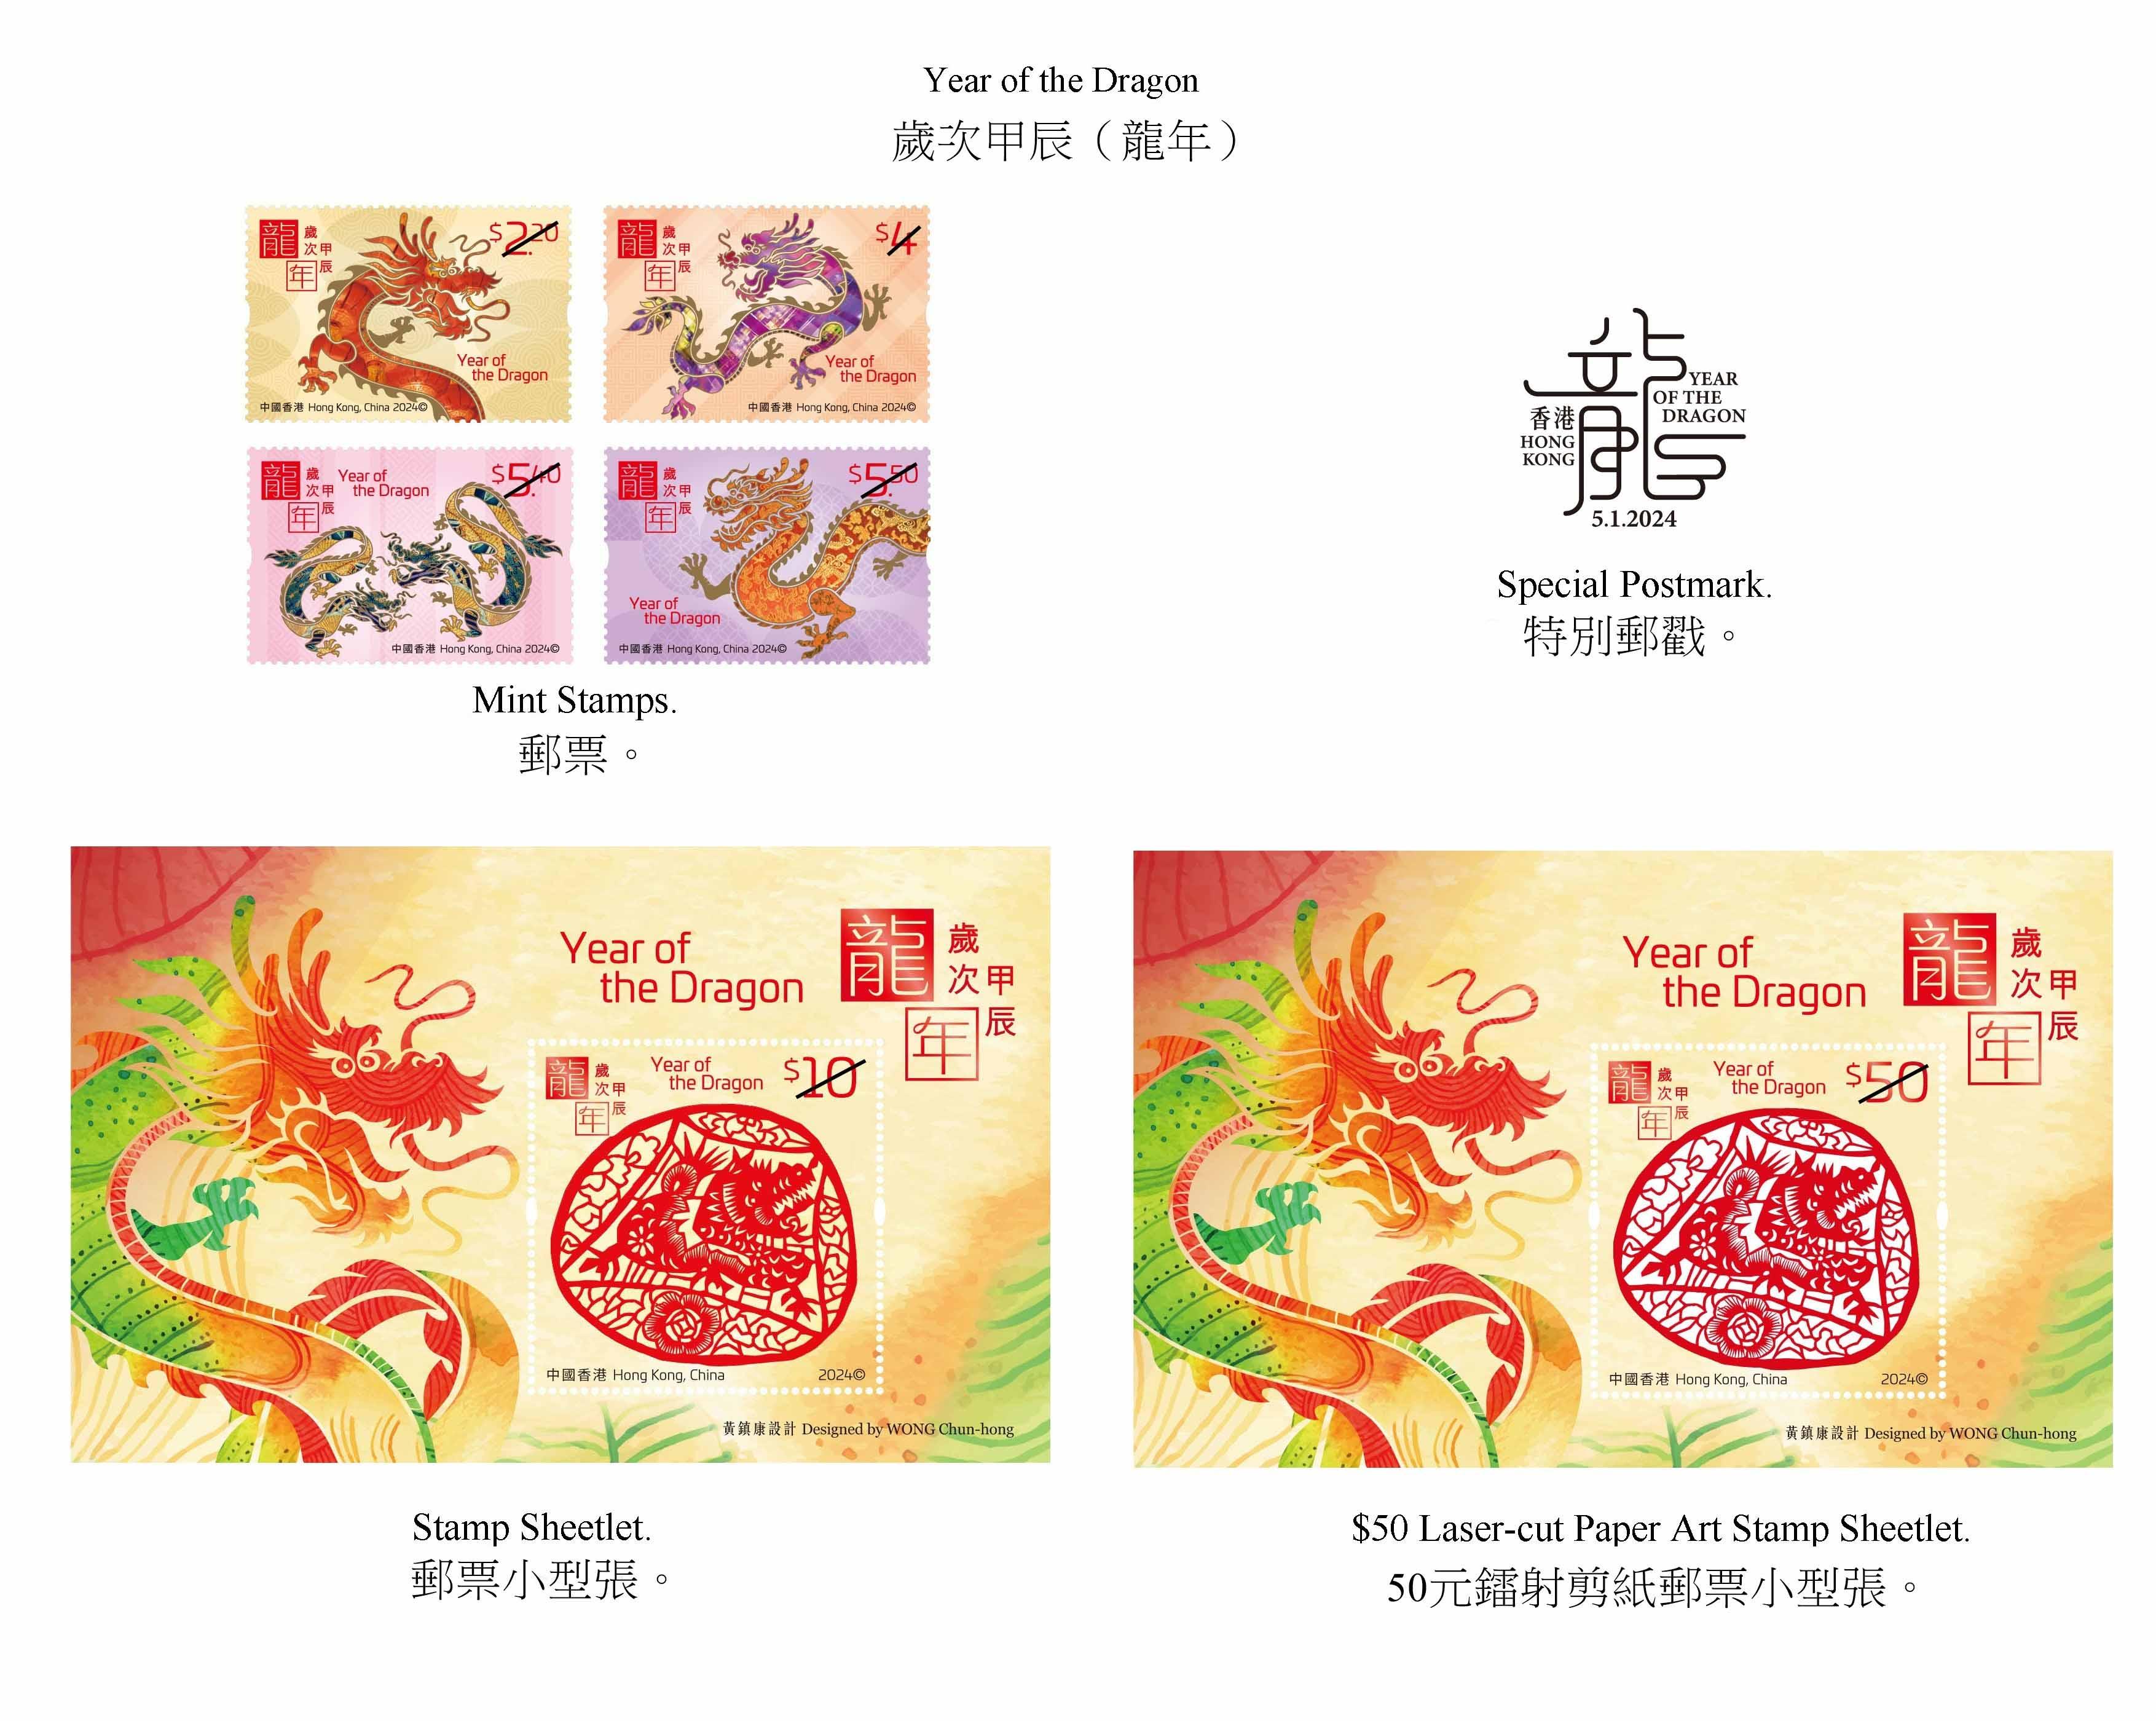 香港邮政二○二四年一月五日（星期五）发行以「岁次甲辰（龙年）」为题的特别邮票及相关集邮品。图示邮票、邮票小型张和特别邮戳。